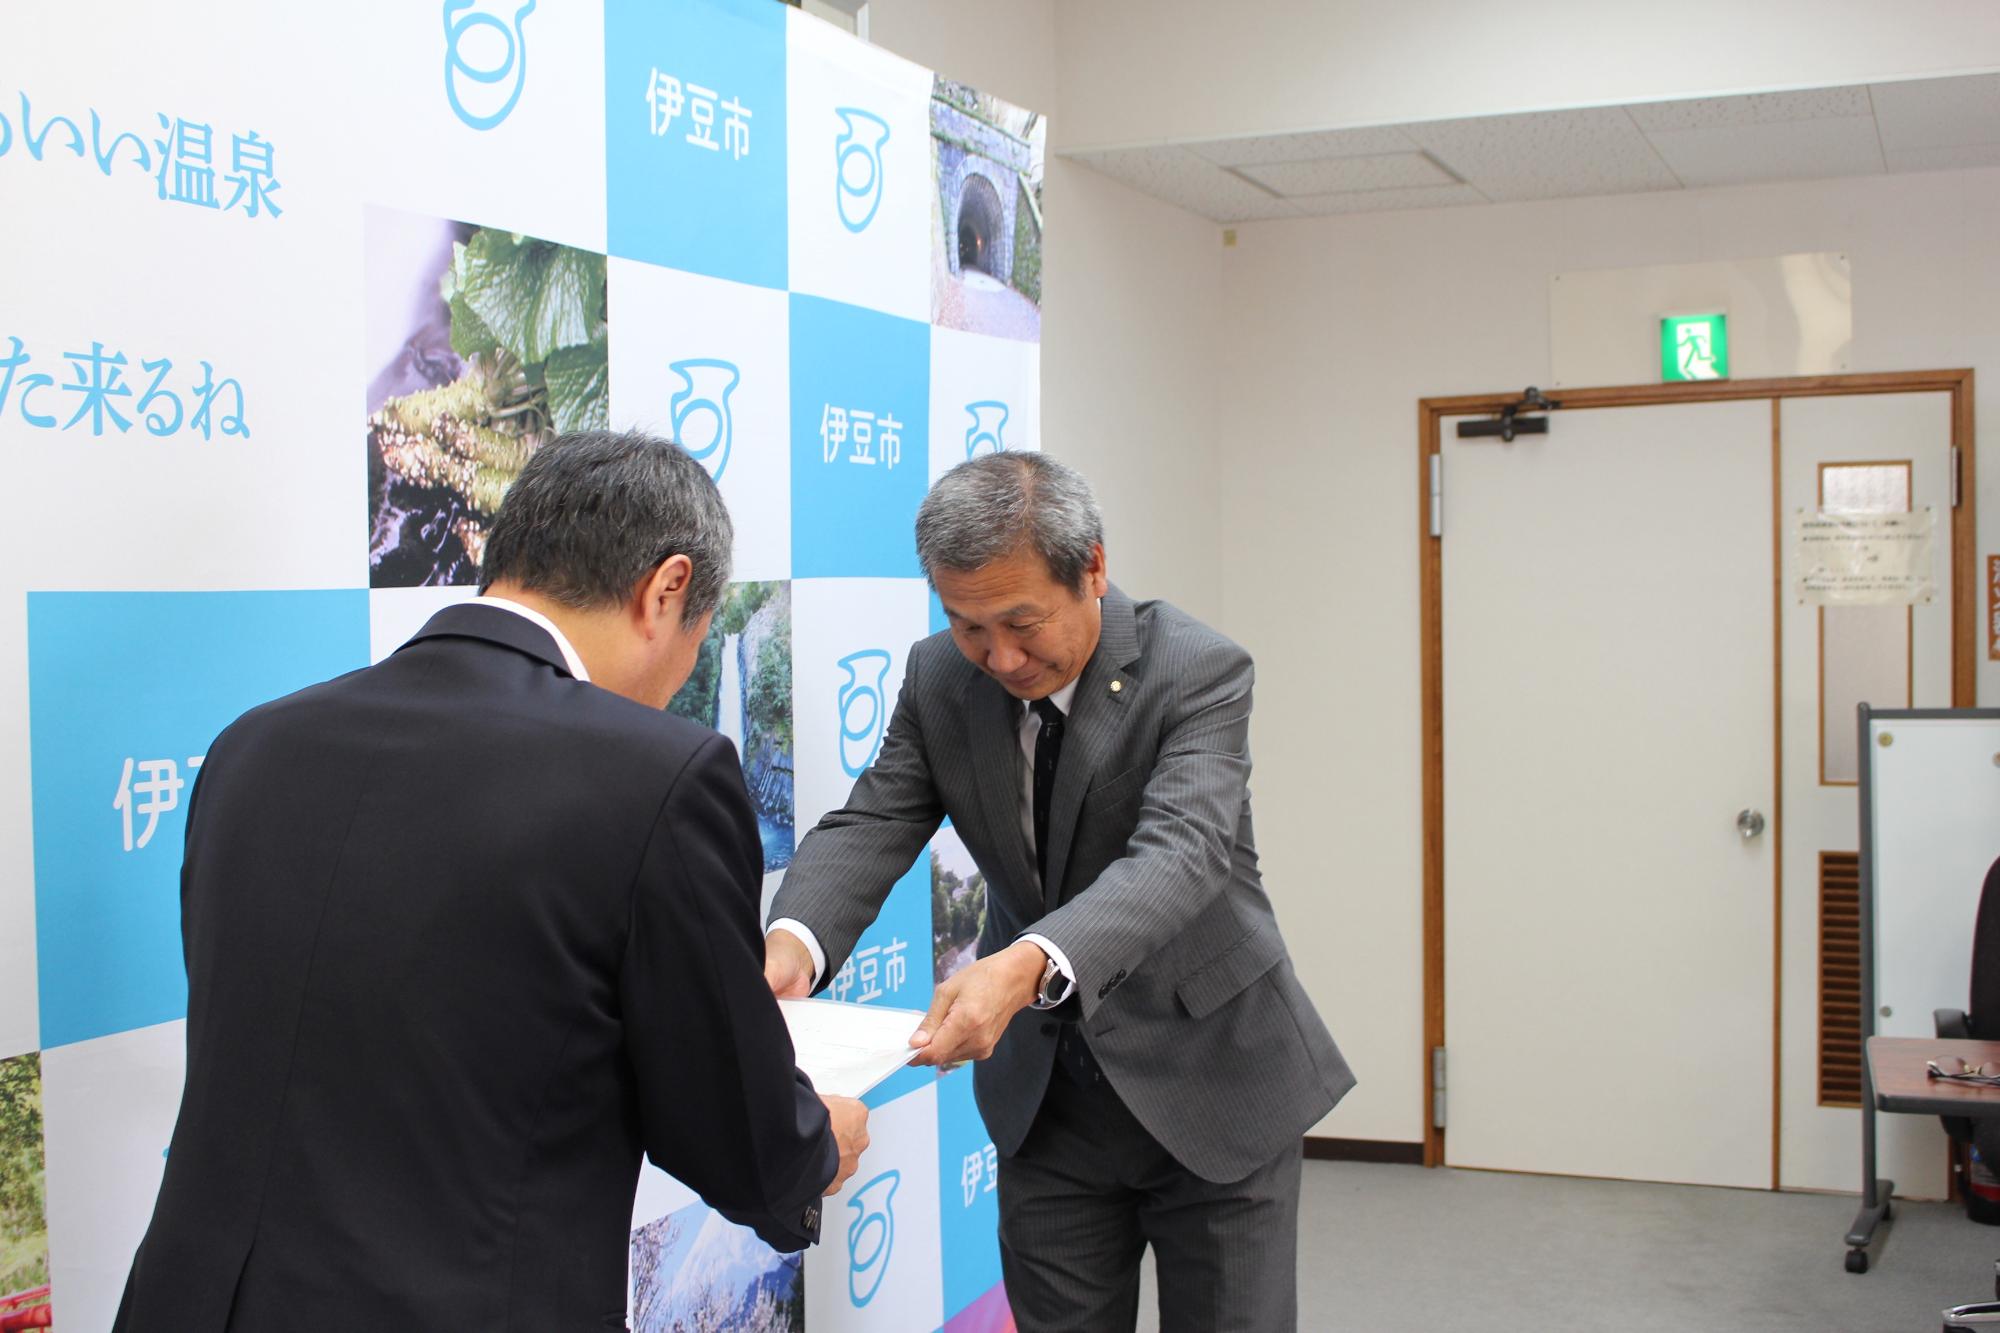 山田健次審議会会長から市長へ答申書が手渡された様子の写真